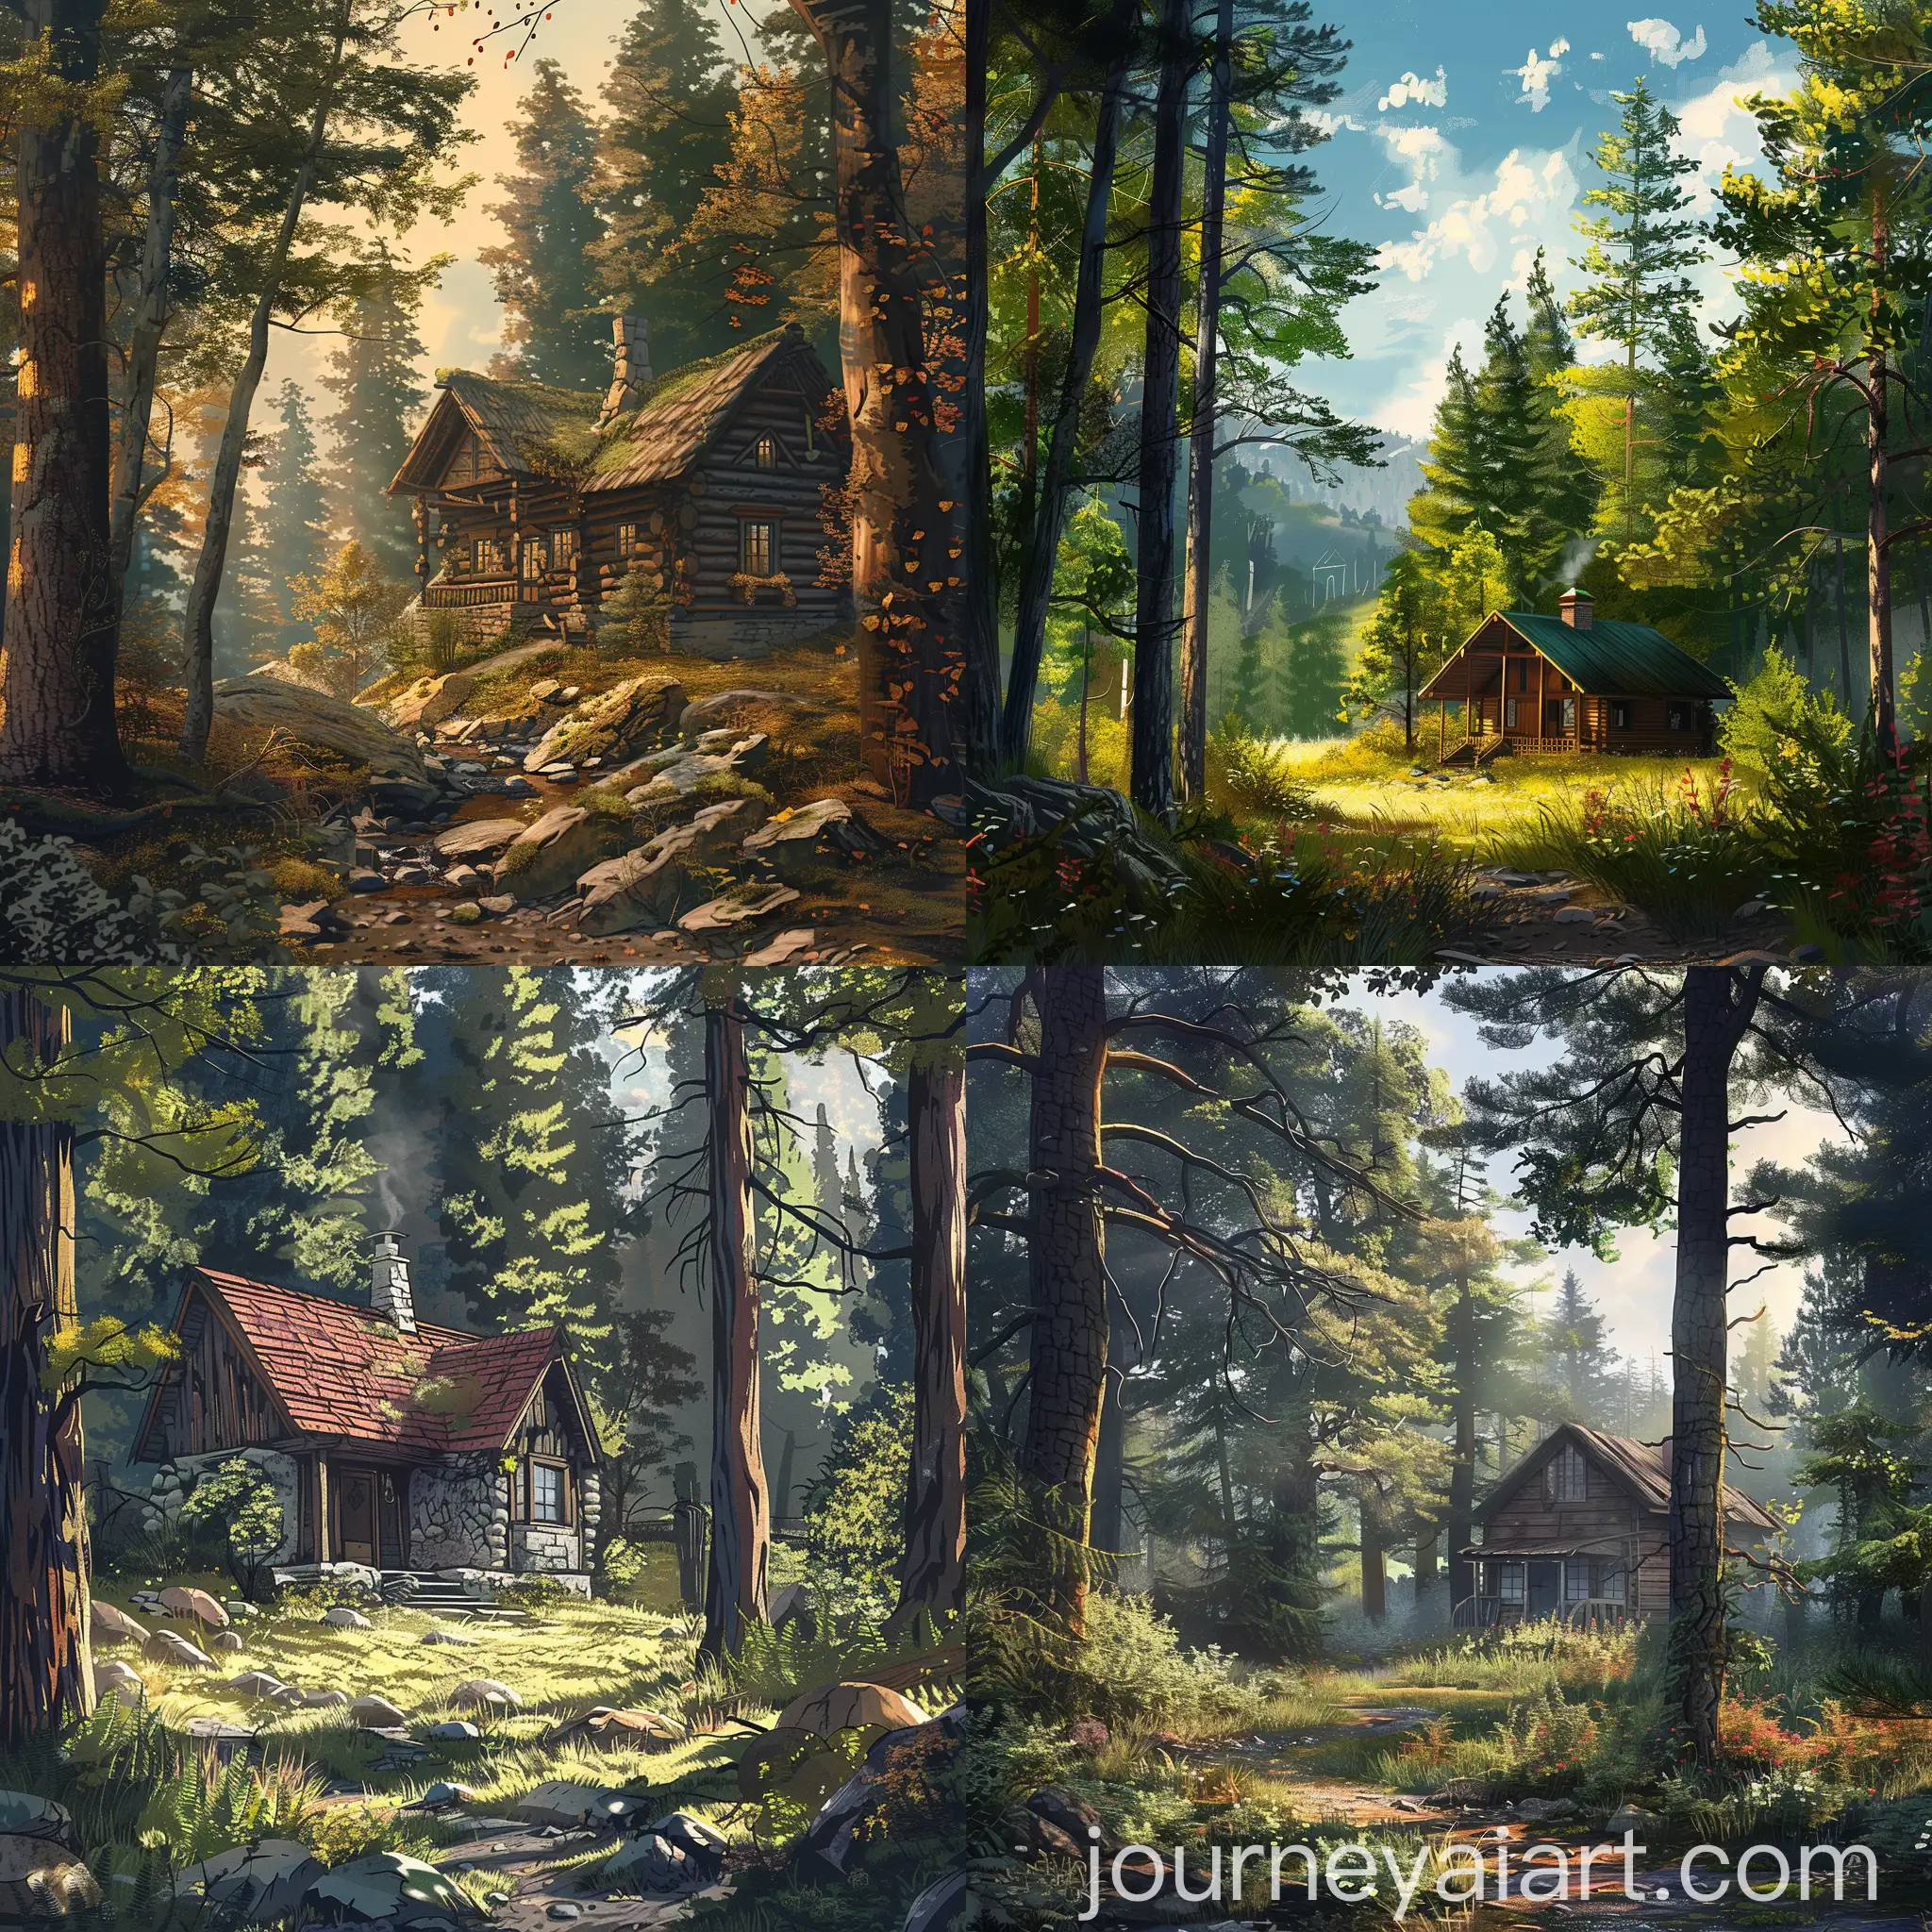 Tranquil-Cabin-in-Woods-Serene-Daytime-Nature-Landscape-Digital-Illustration